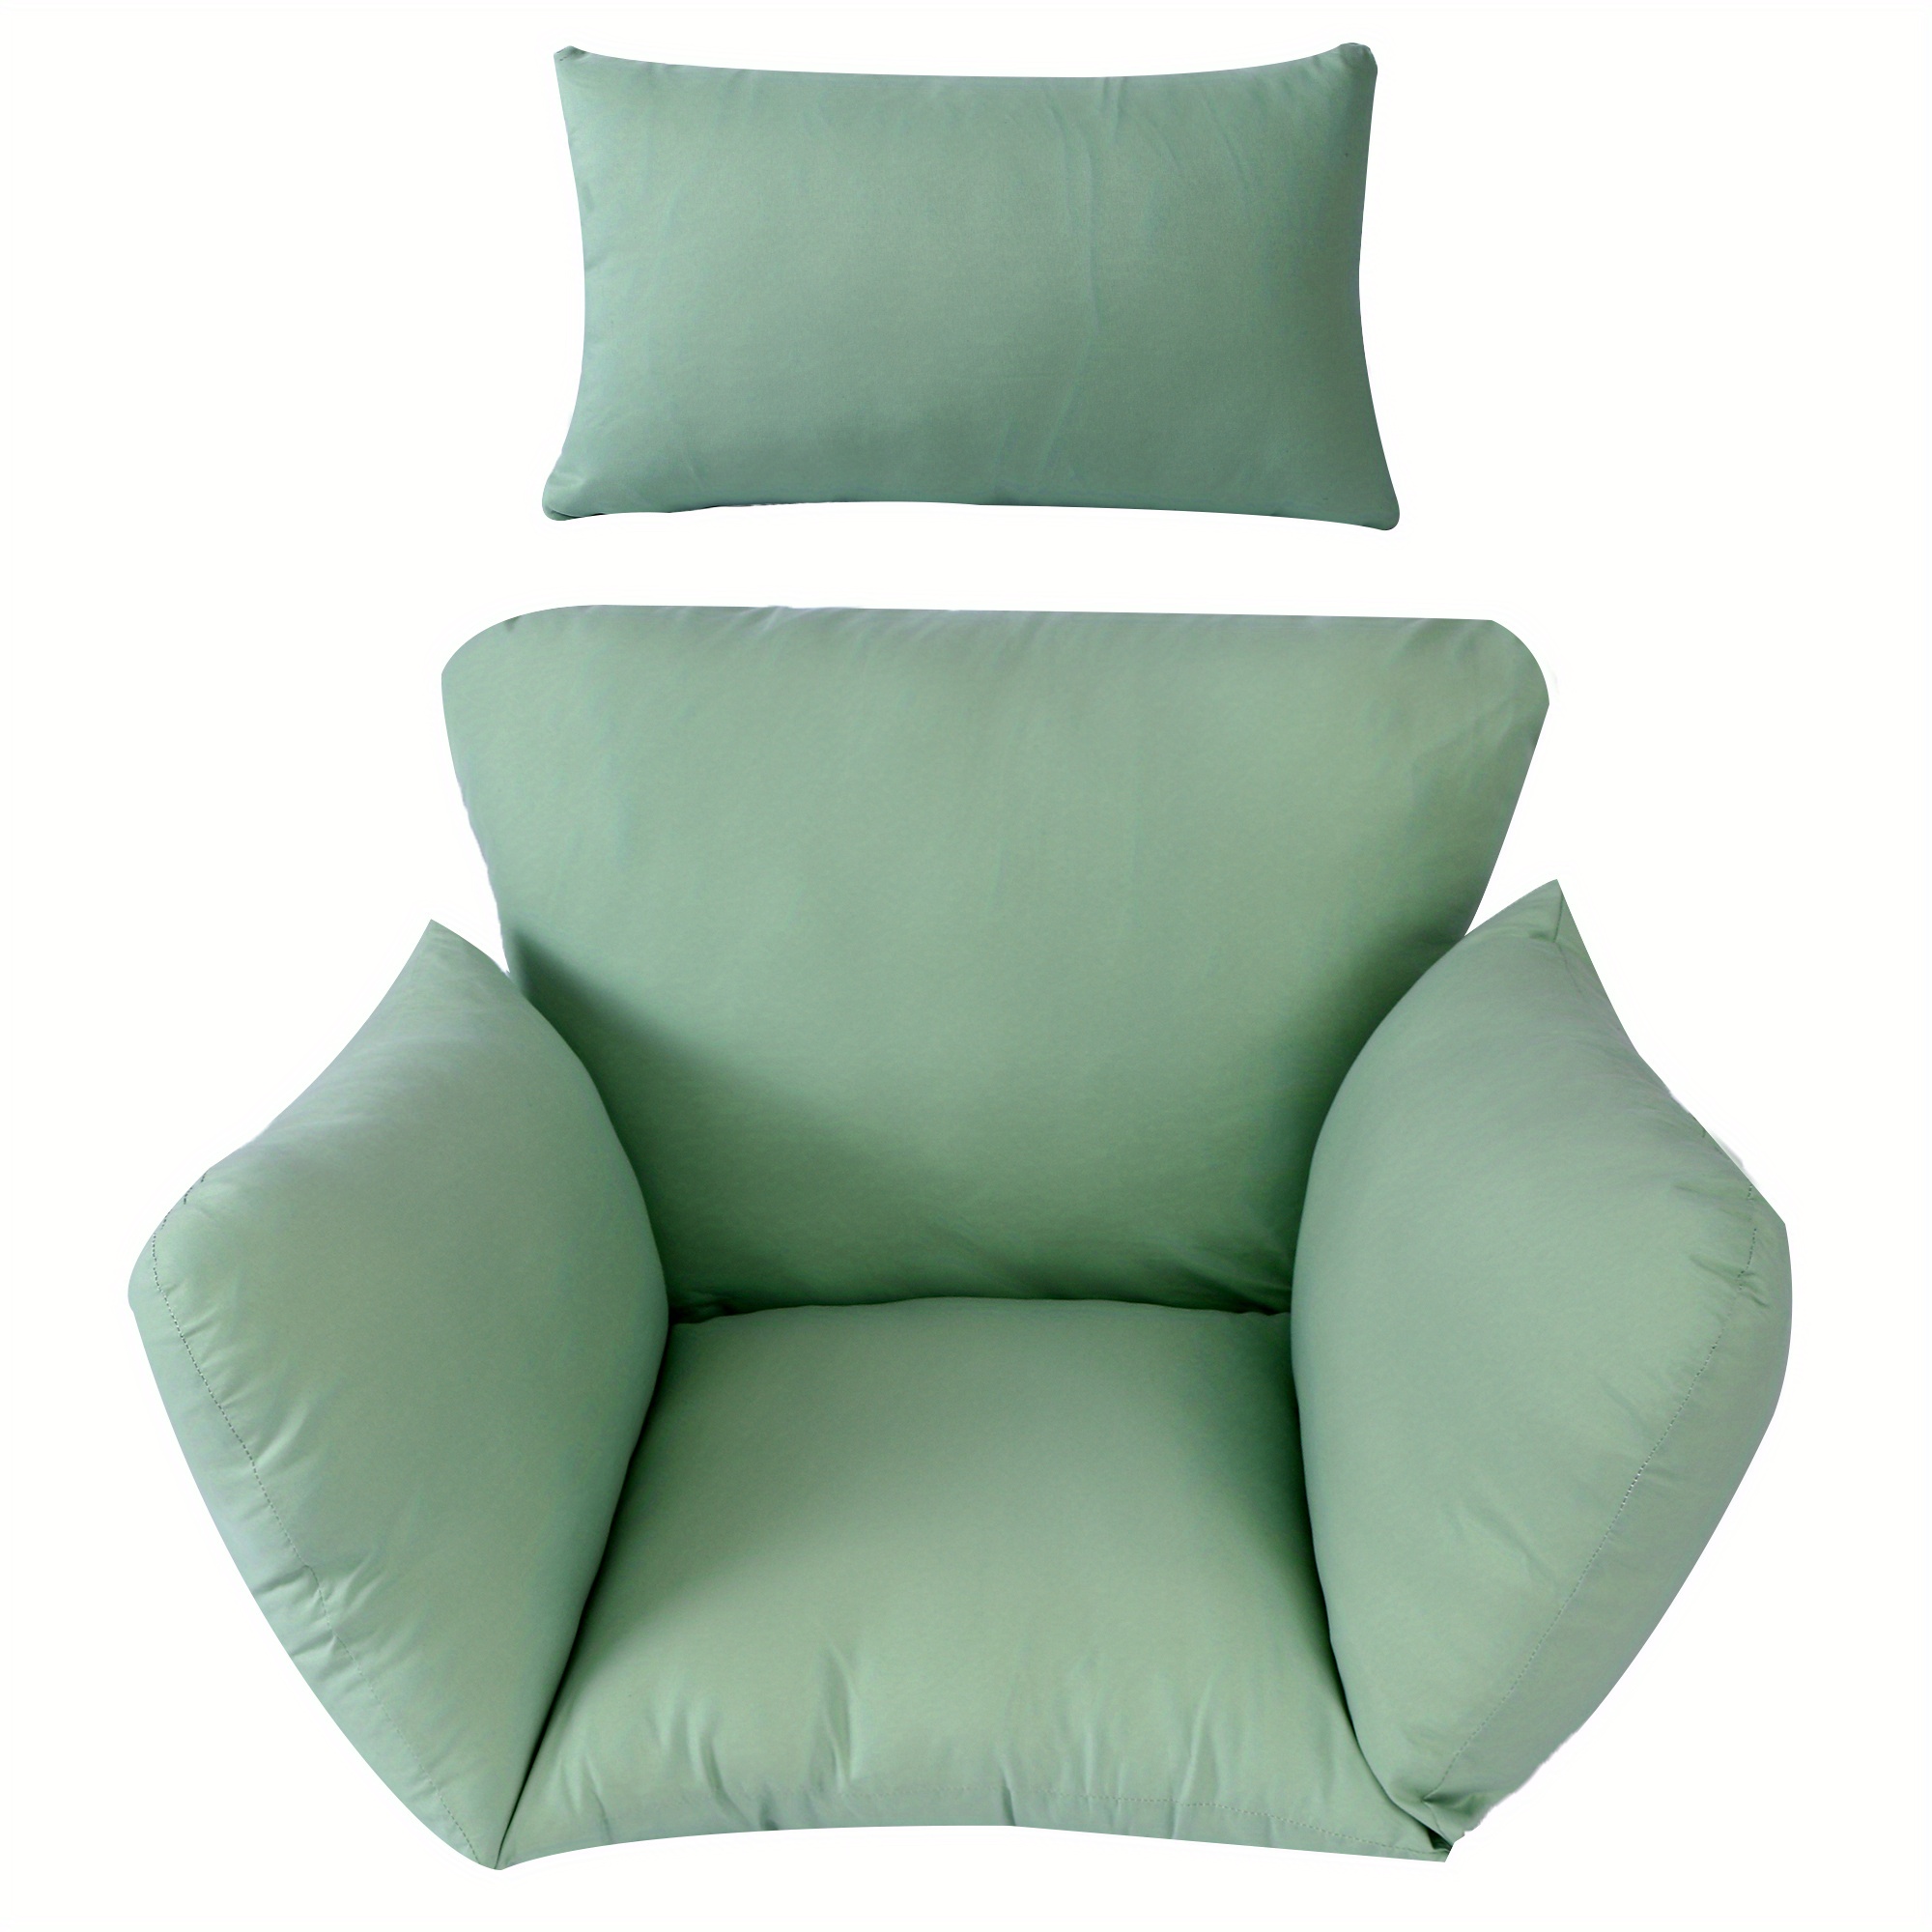 Pillow Chair - Green